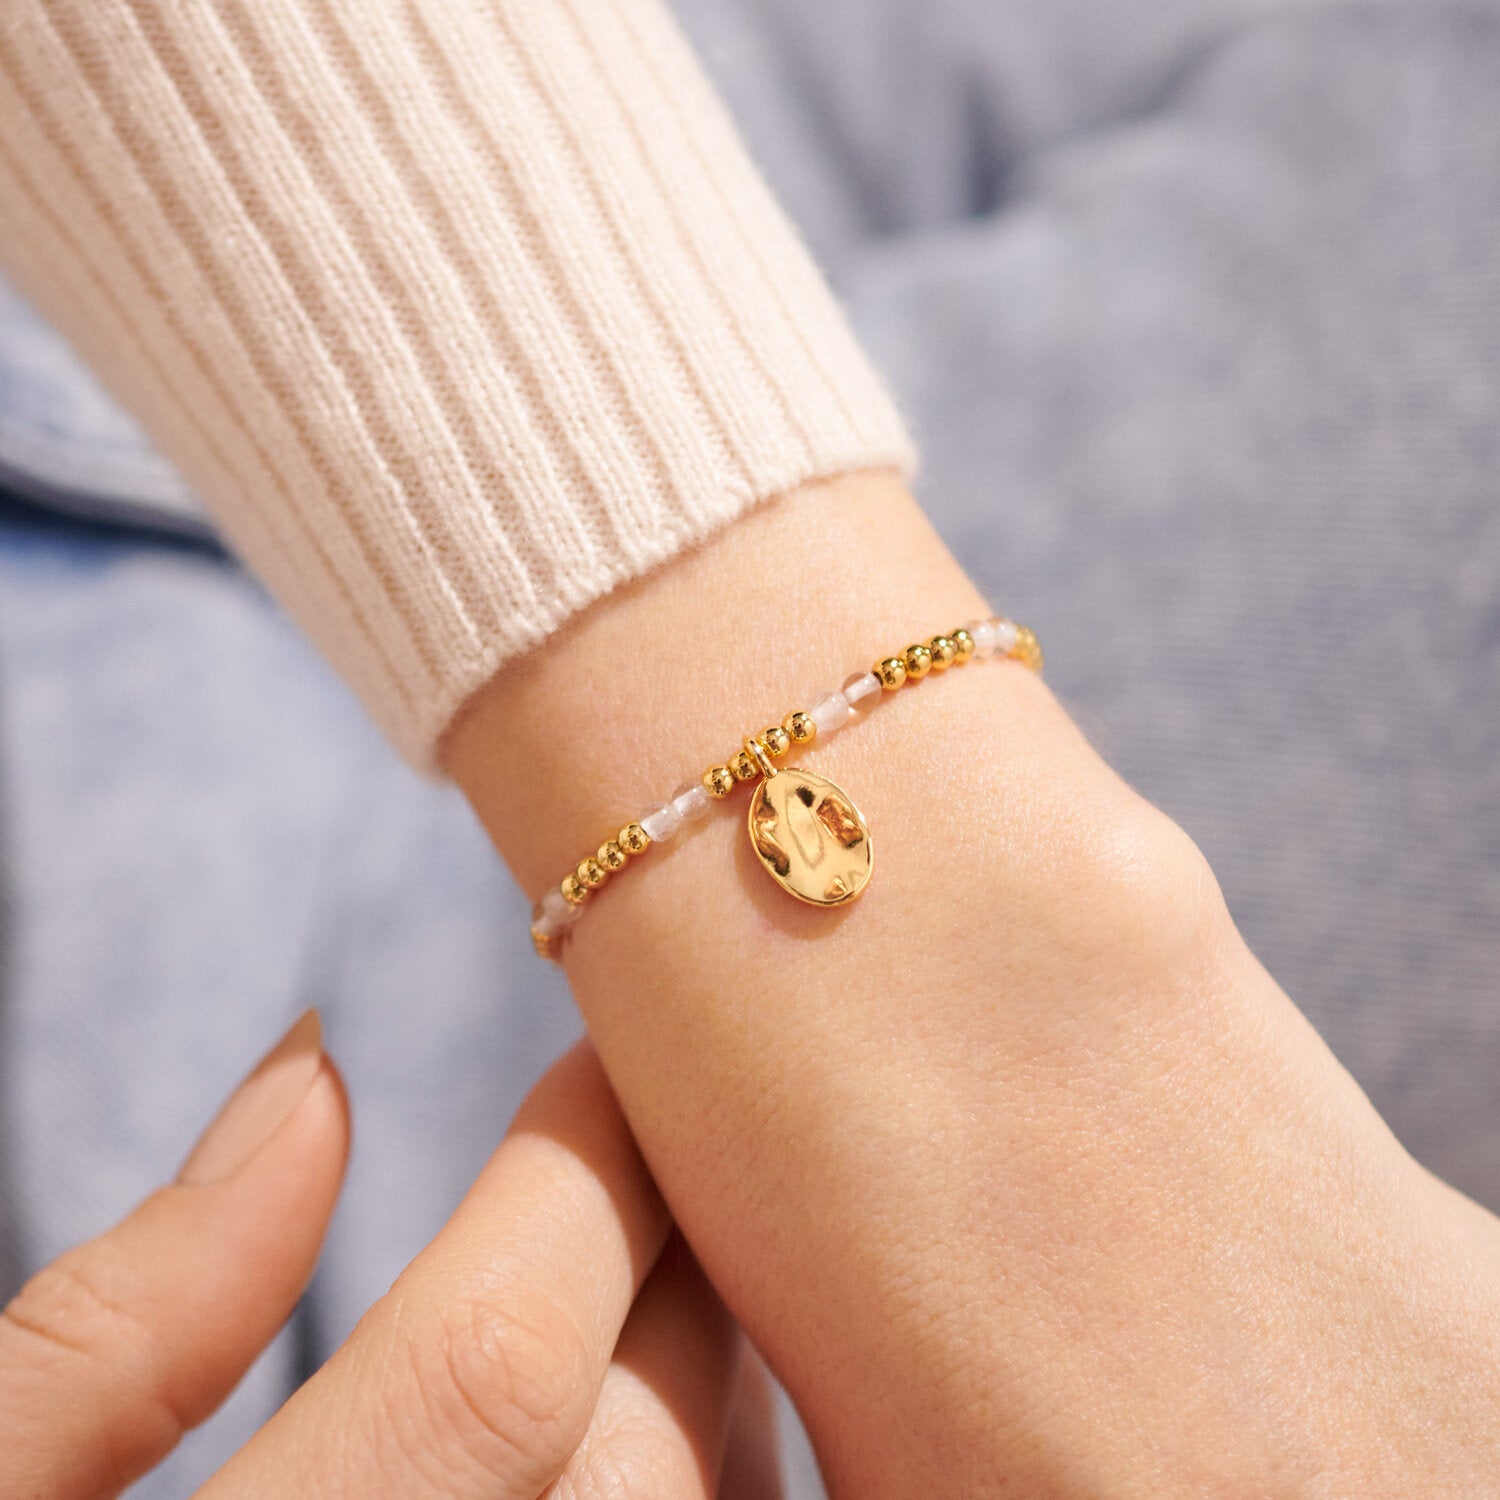 April - A Little Birthstone Bracelet - Gold - Joma Jewellery